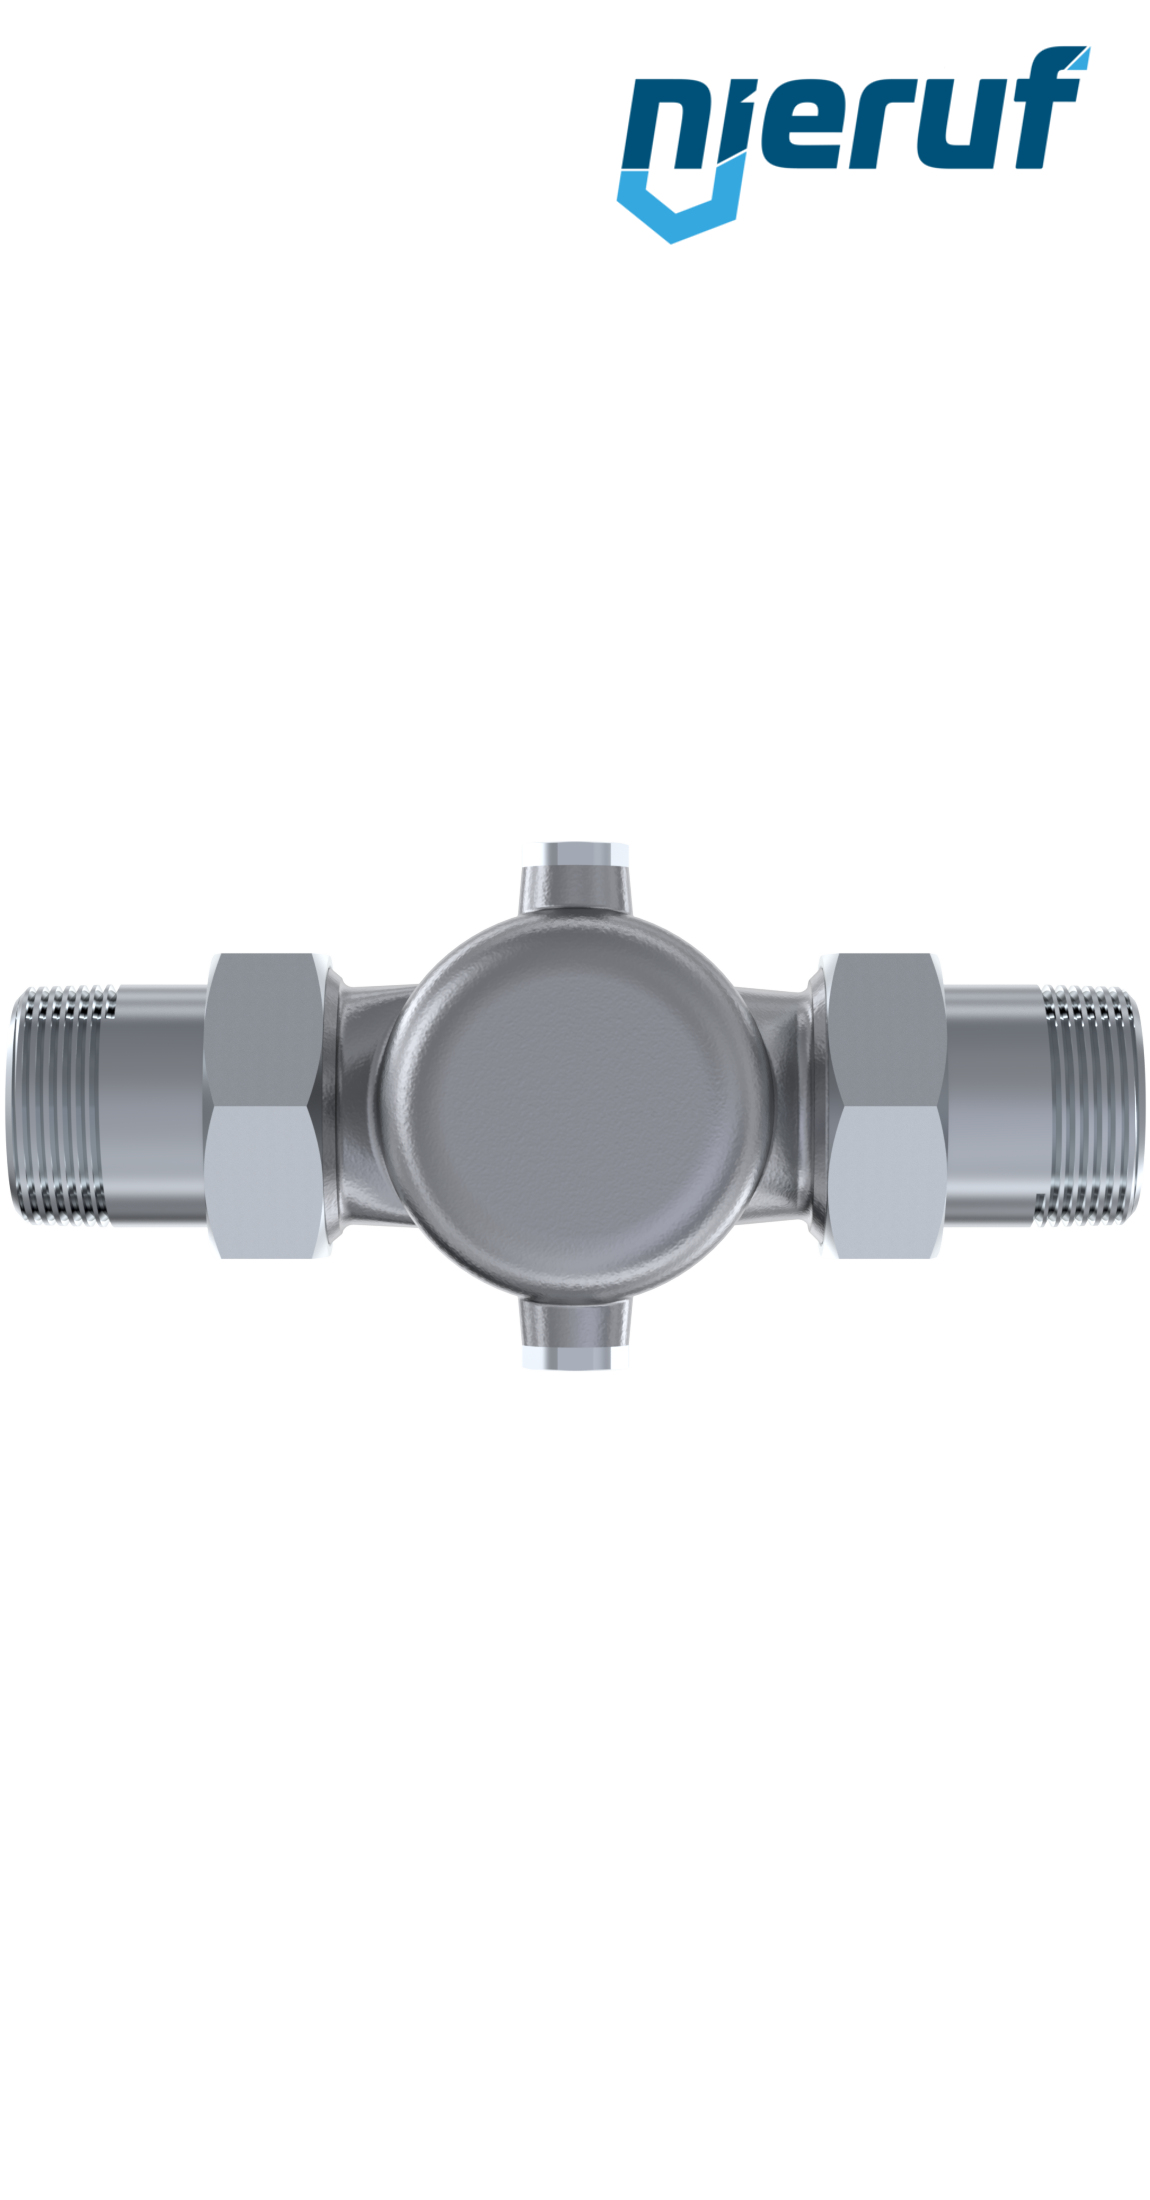 pressure reducing valve 2" inch male thread DM04 stainless steel FKM 1.0 - 8.0 bar